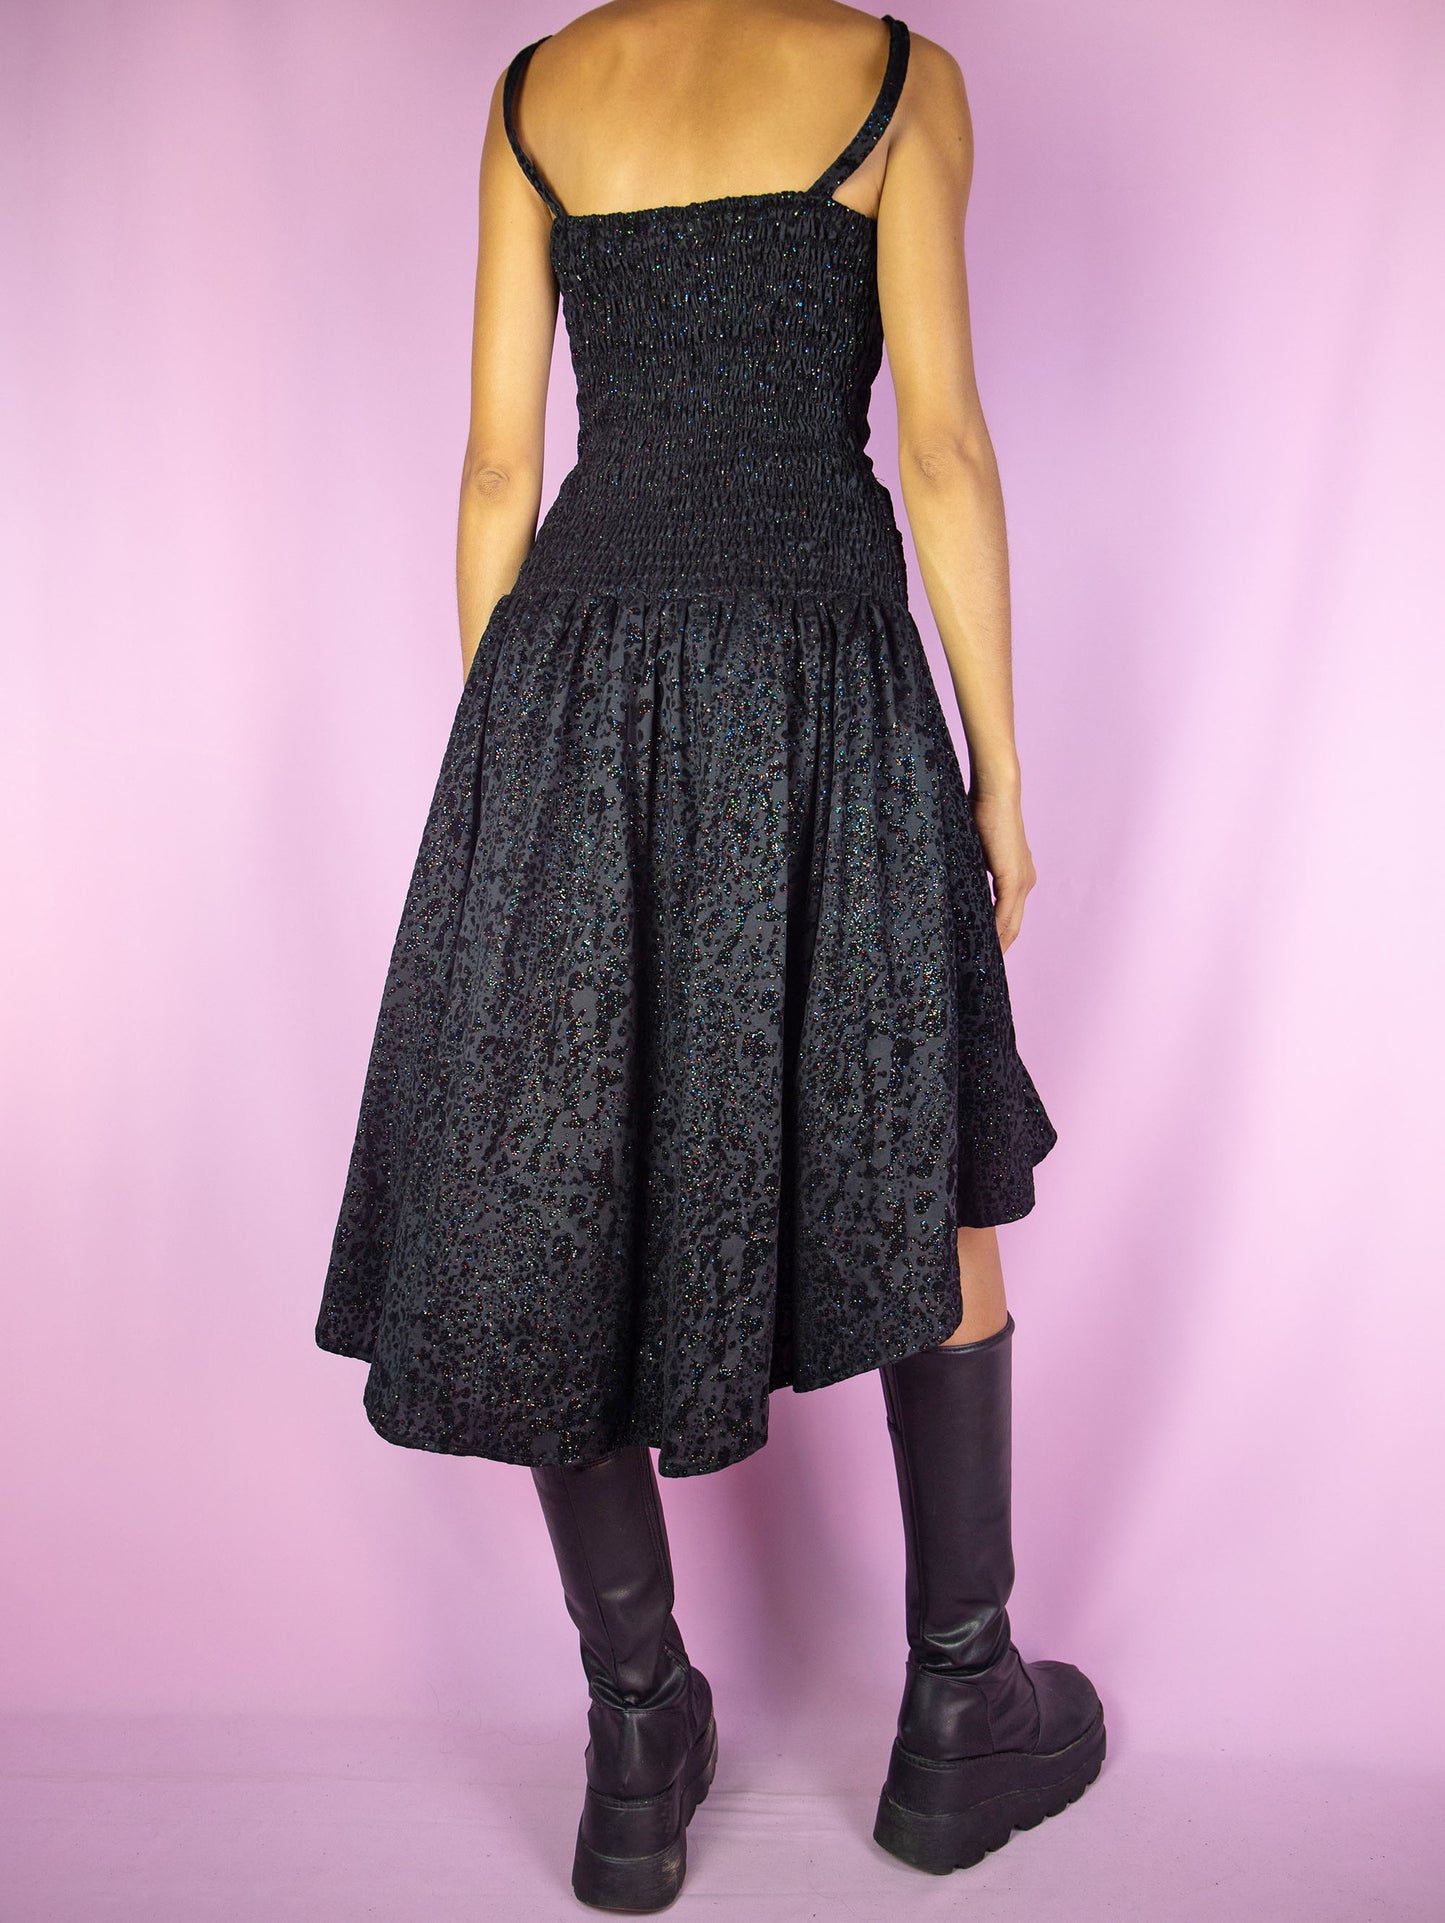 Vintage 90s Party Black Mini Dress - M